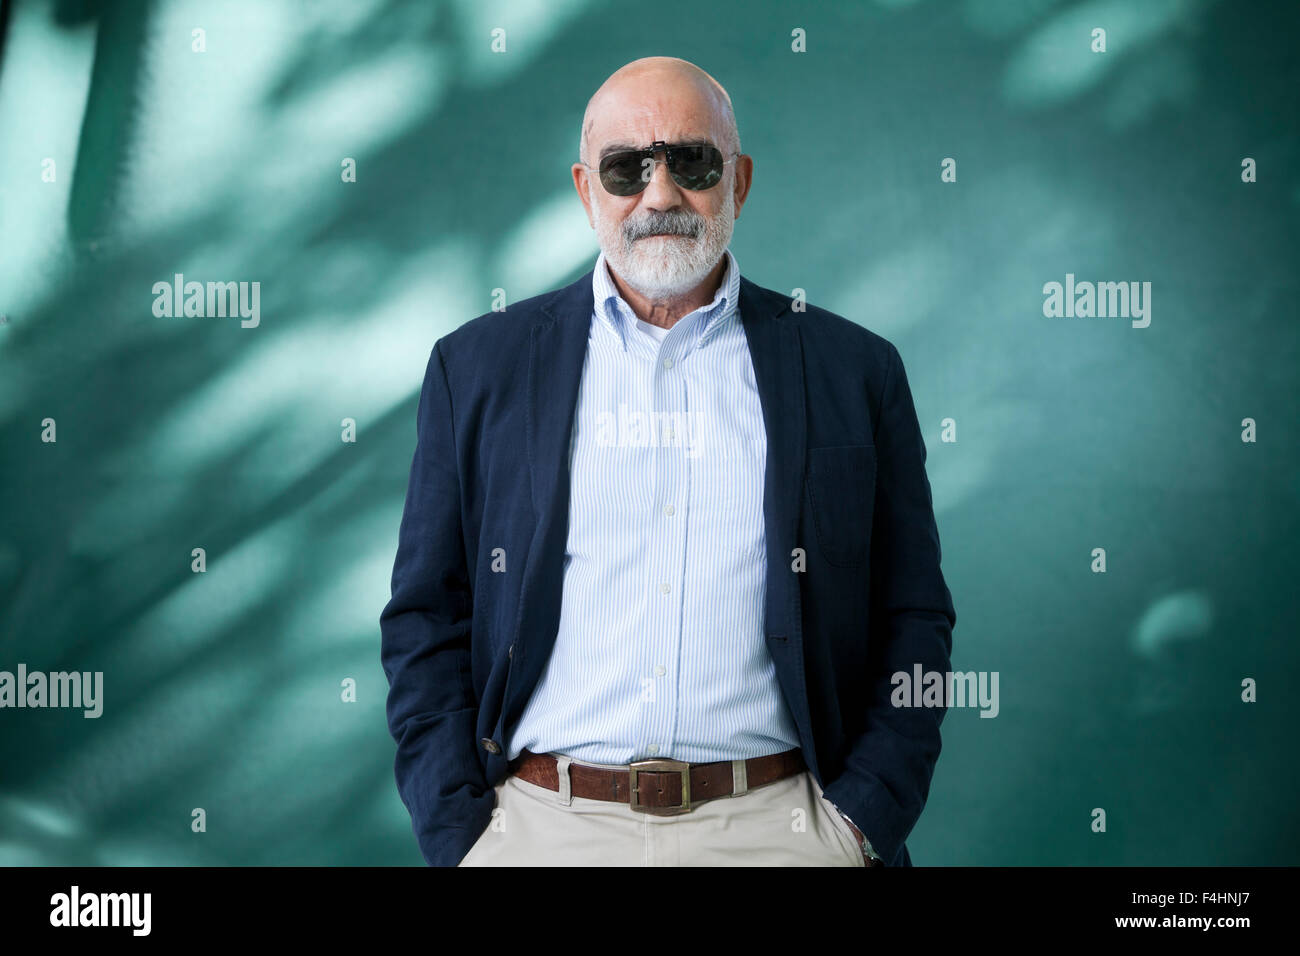 Ahmet Altan, le journaliste et auteur turc, à l'Edinburgh International Book Festival 2015. Edimbourg, Ecosse. 27 août 2015 Banque D'Images